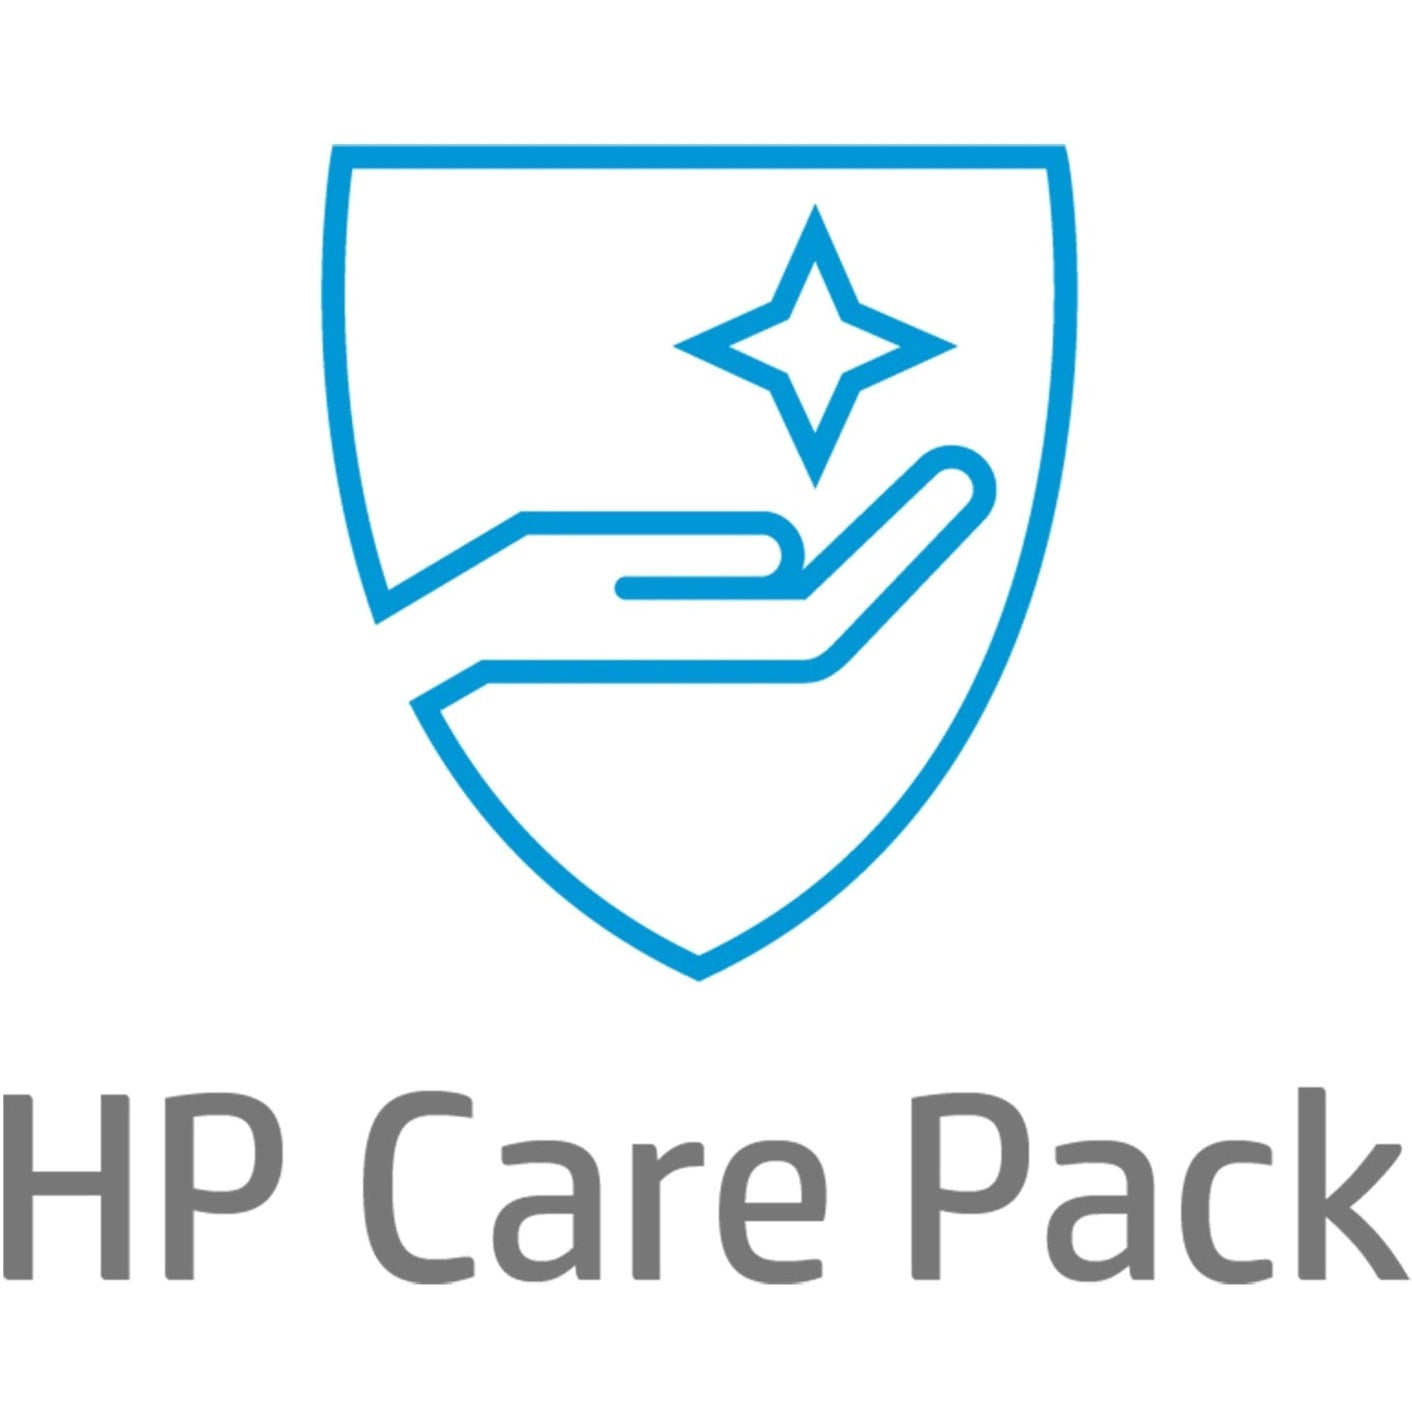 HP Care Pack - Extended Service - 3 Year - Service (U9MU0E)